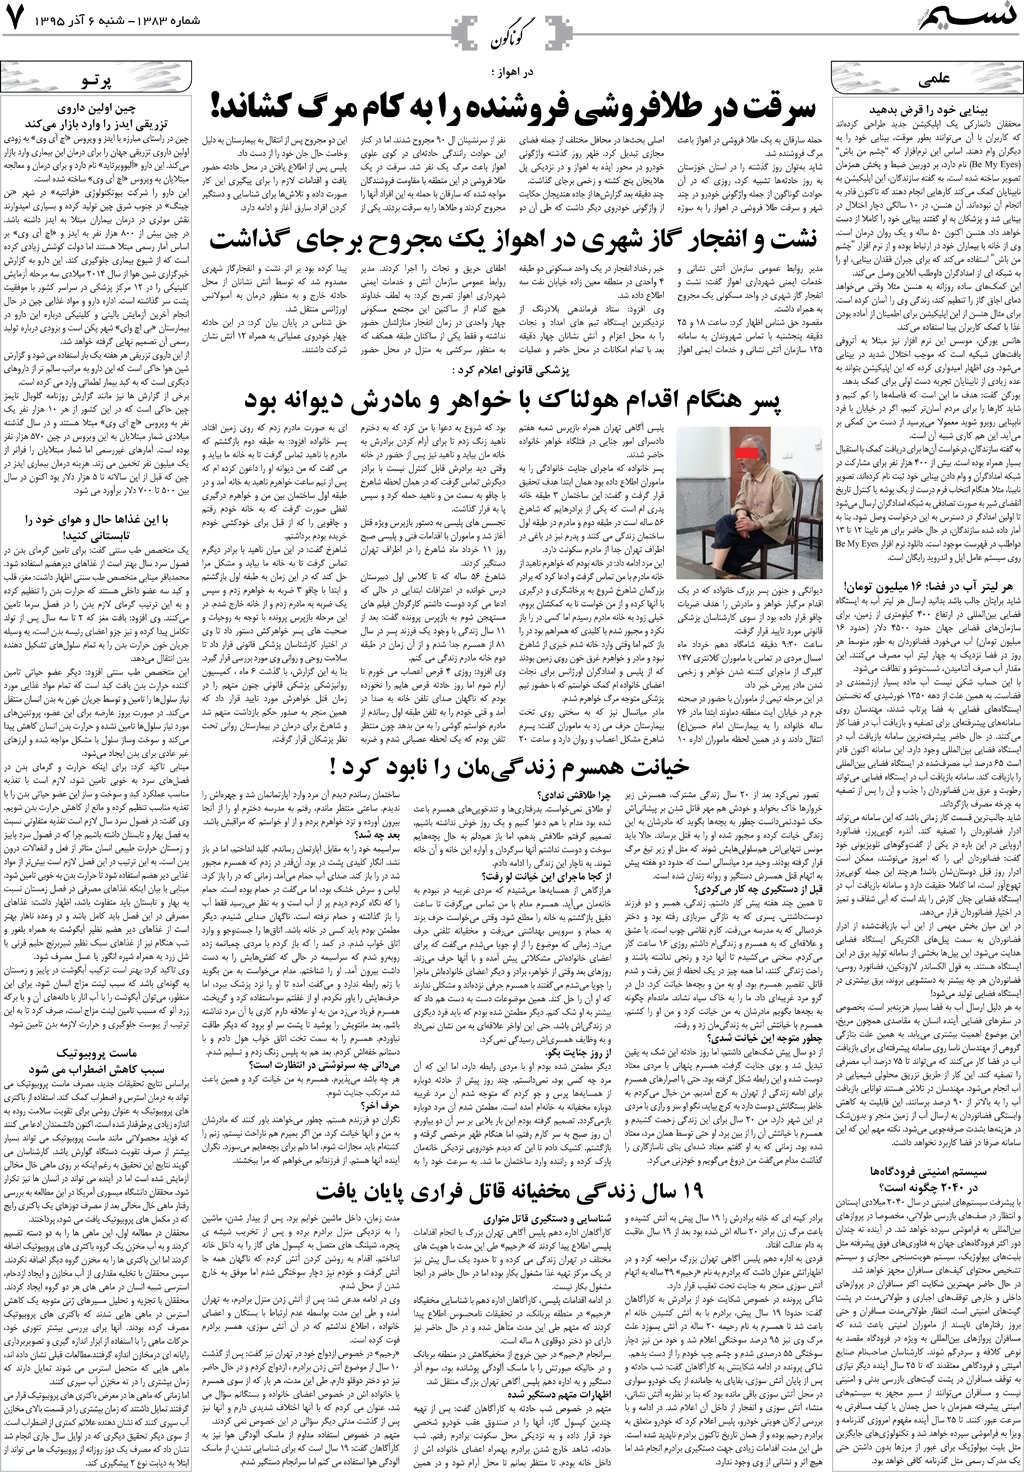 صفحه گوناگون روزنامه نسیم شماره 1383